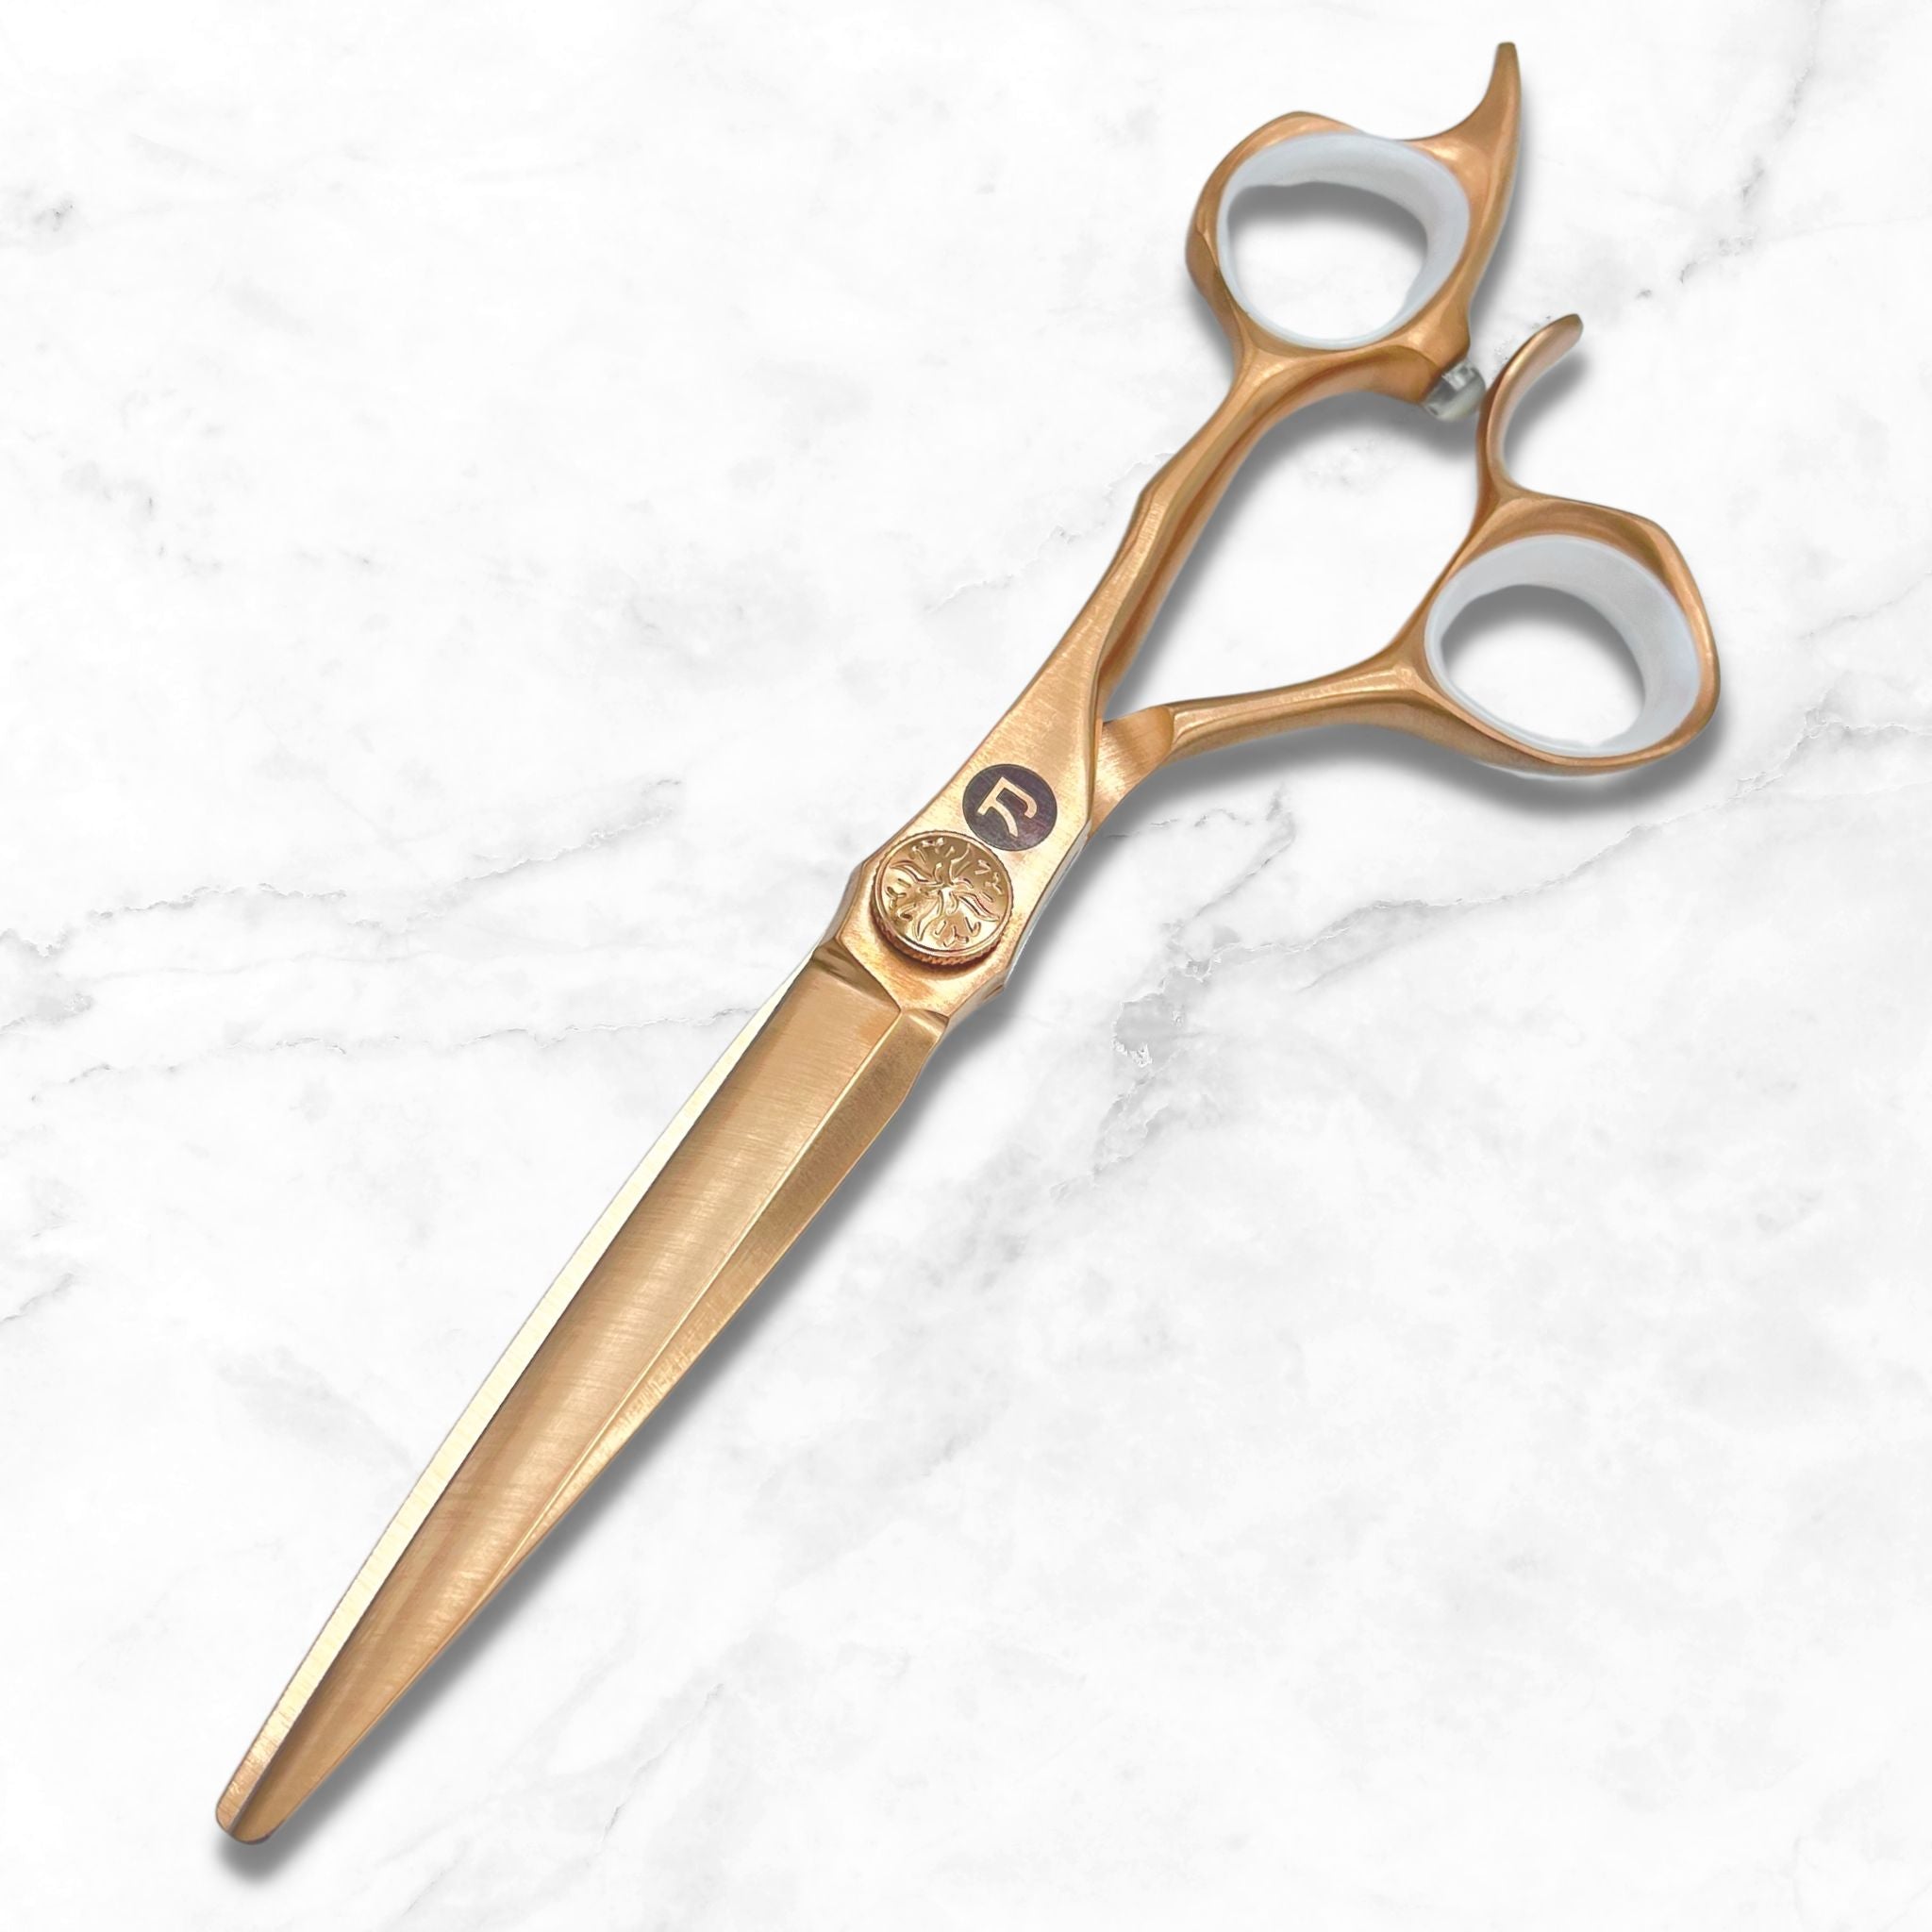 Cesoie/forbici per tagliare i capelli d'oro